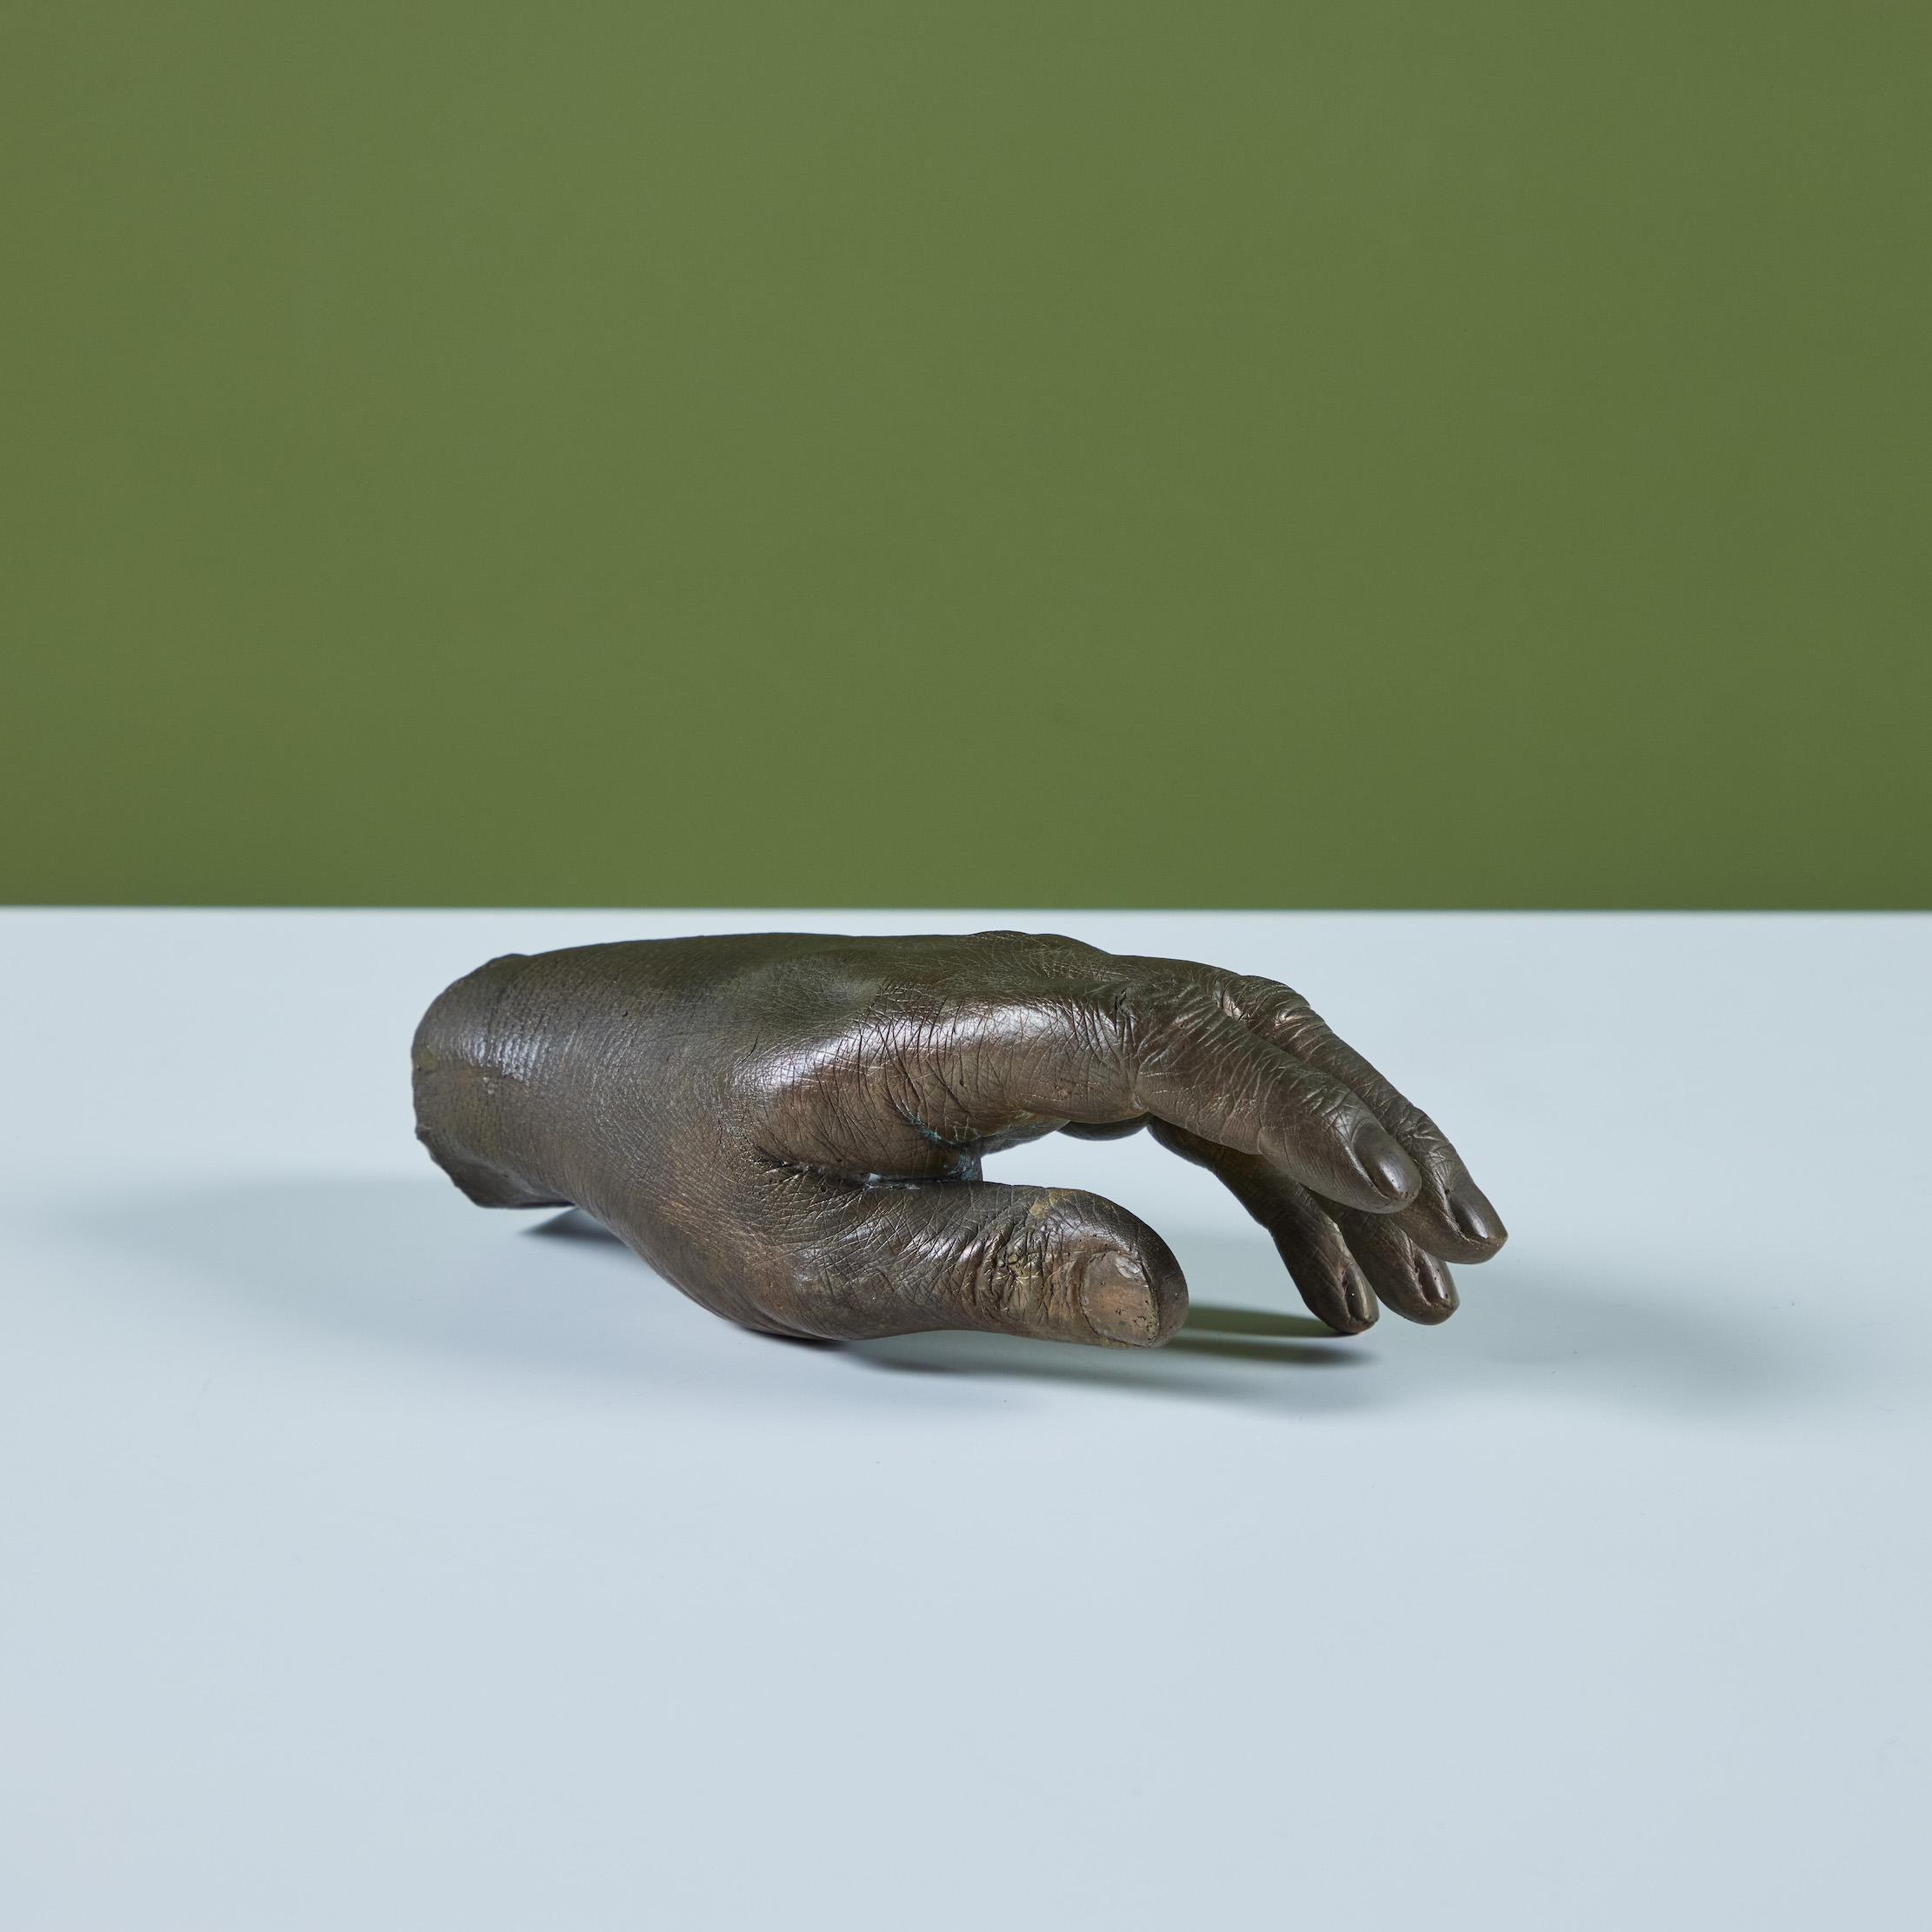 Gegossene Hand aus Bronze im Stil von Pietrina Checcacci. Die Hand ist hohl mit vielen komplizierten Details an Knöcheln und Fingernägeln. Er ist so konzipiert, dass er auf einer ebenen Fläche steht und nach Belieben positioniert werden